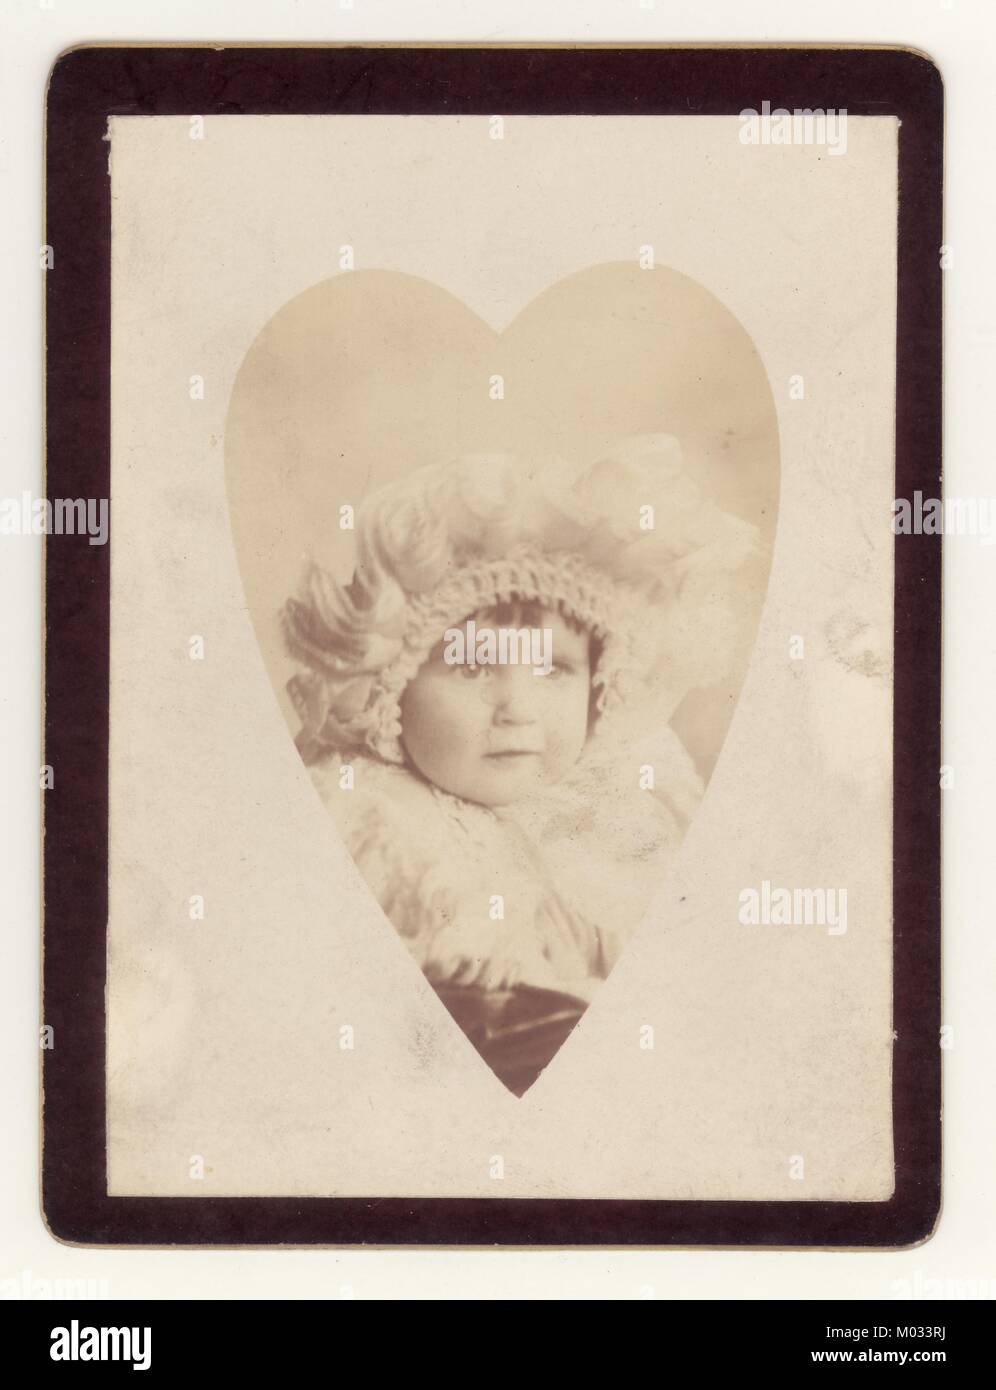 Studio-Porträtfoto in Herz-Vignette von niedlichen Baby Junge oder Mädchen in aufwendigen Haube um 1890er. Die Karte ist schwarz, so dass dies eine Gedenkkarte für ein verstorbenes Kleinkind sein könnte., Großbritannien Stockfoto